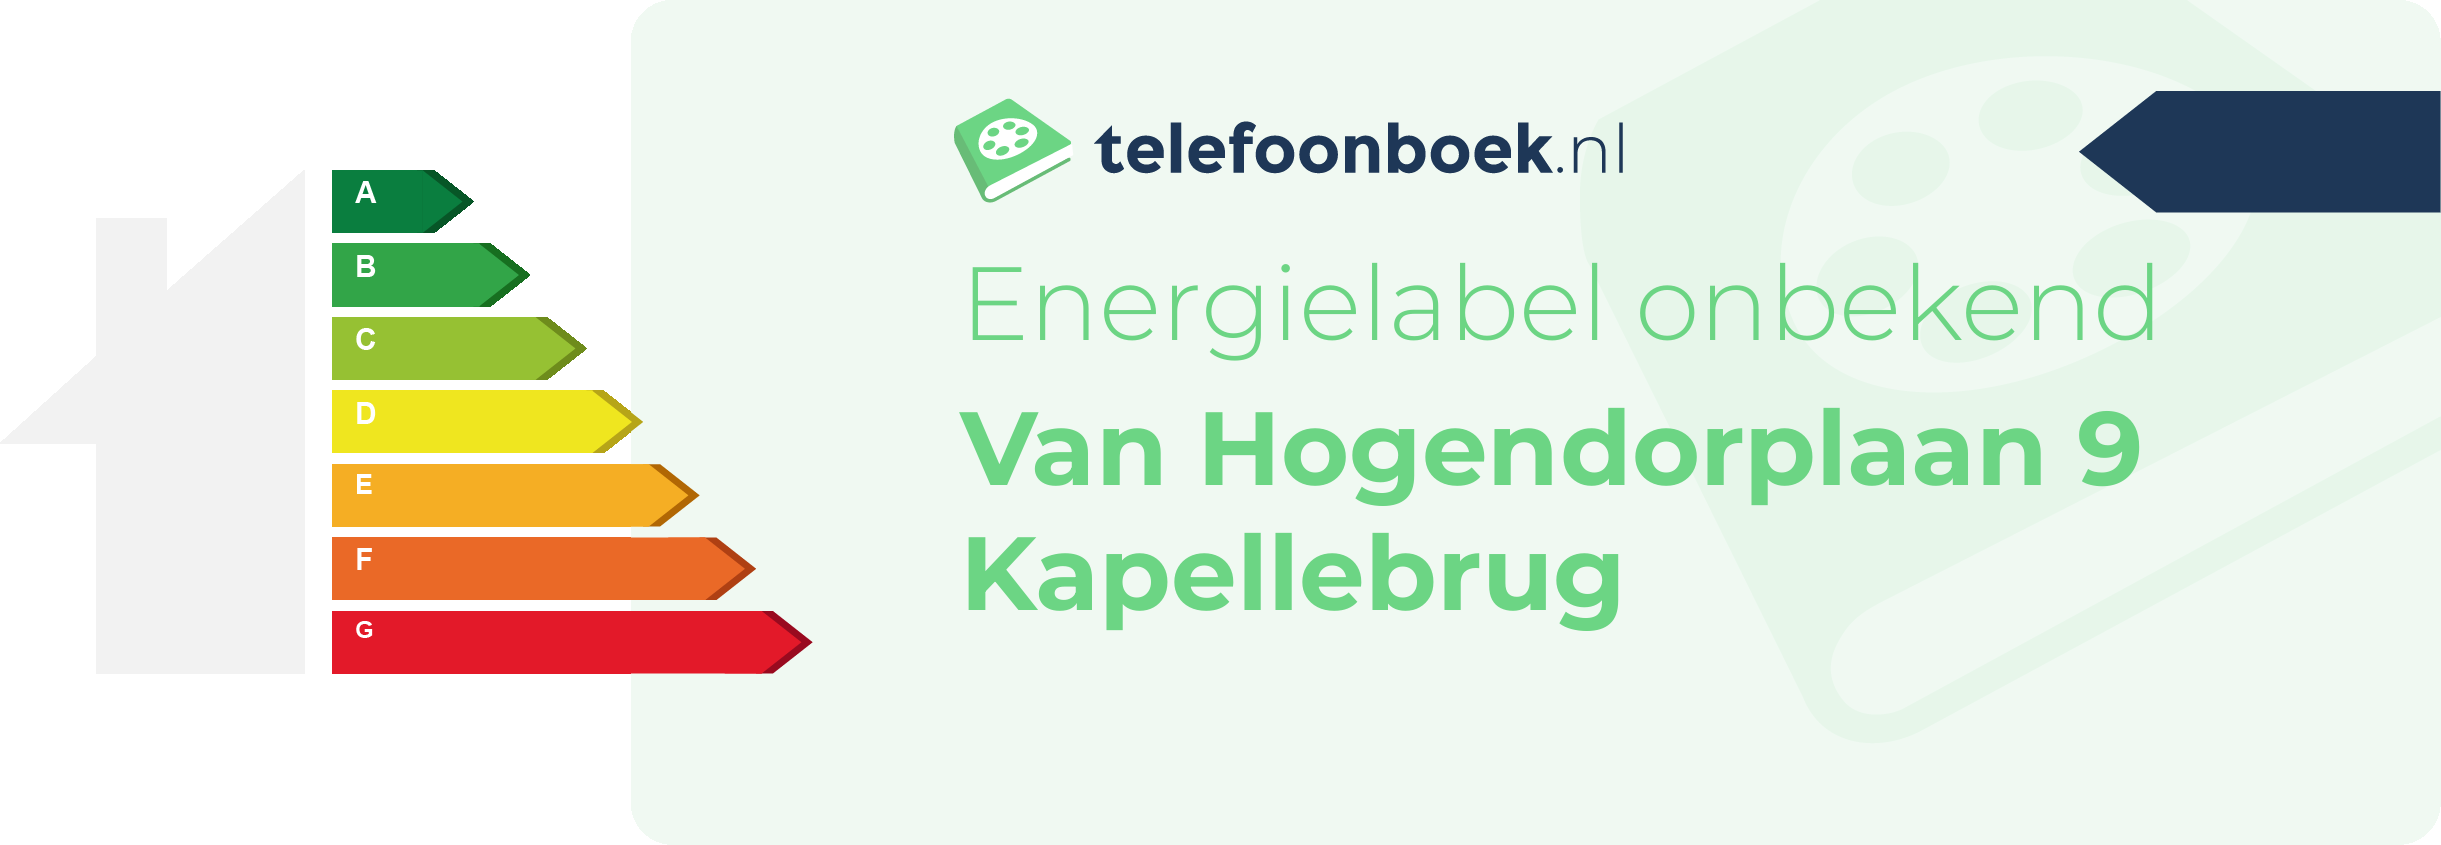 Energielabel Van Hogendorplaan 9 Kapellebrug